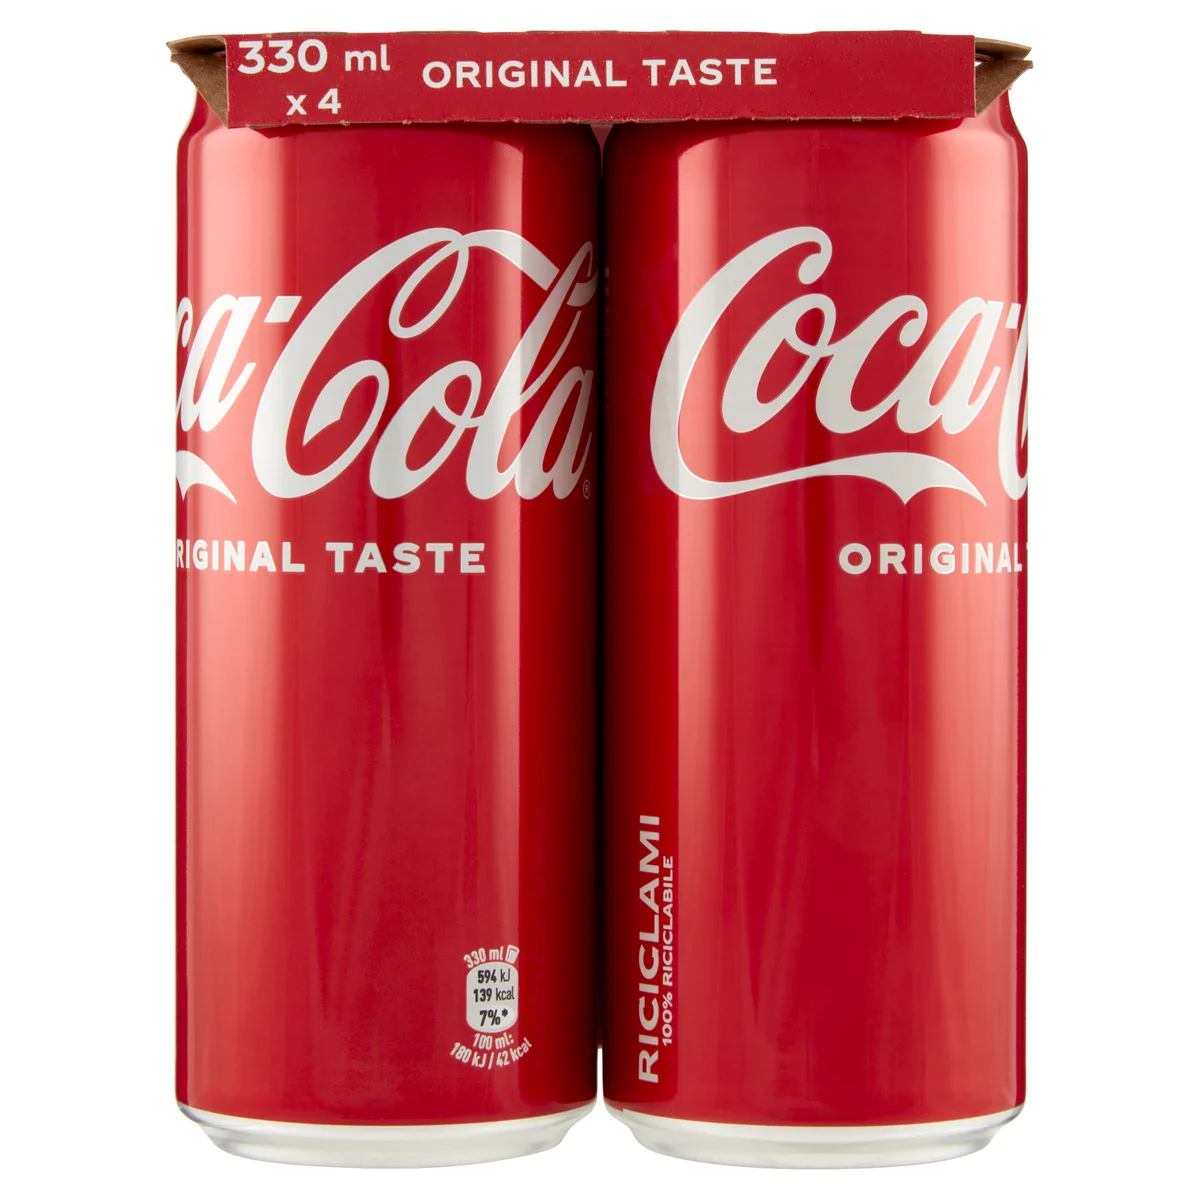 Coca-Cola Original Taste lattina da 330ml confezione da 4